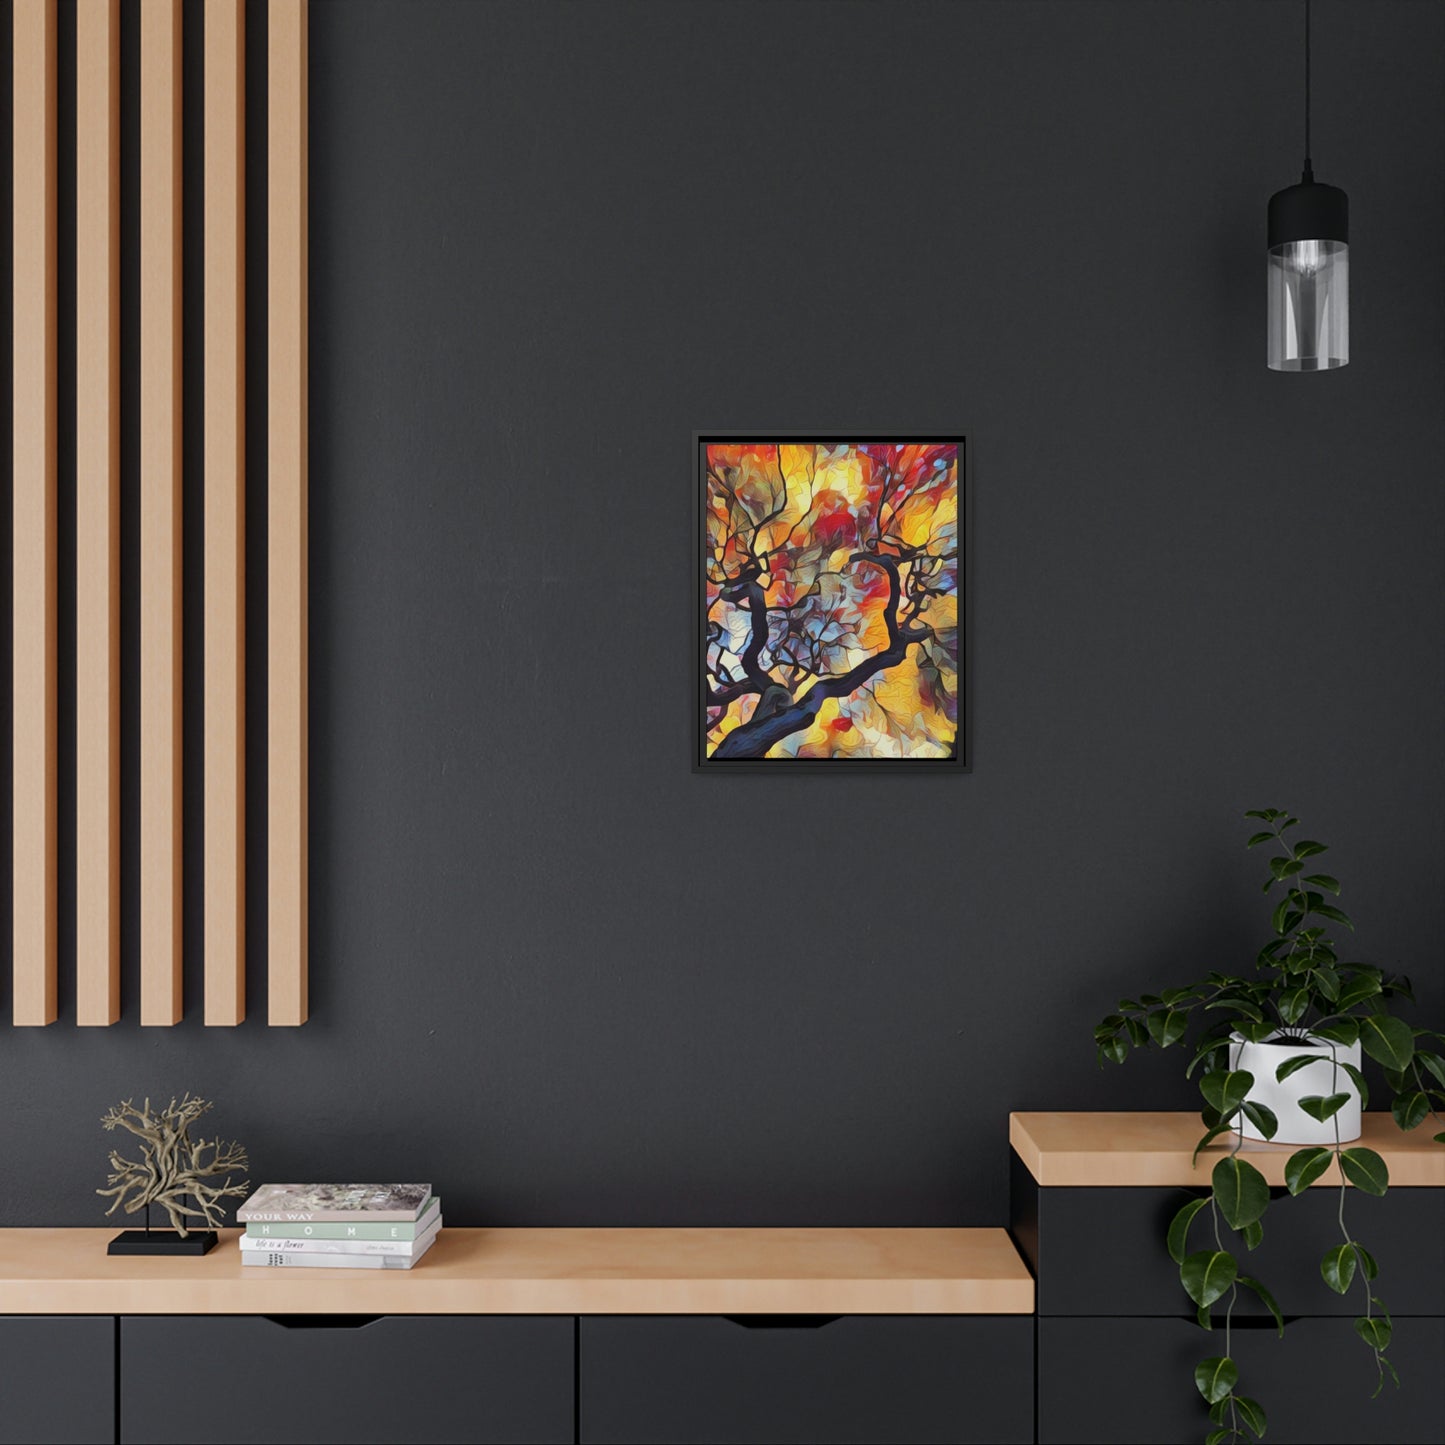 Japanese Maple Wall Decor on a Black-Framed Canvas